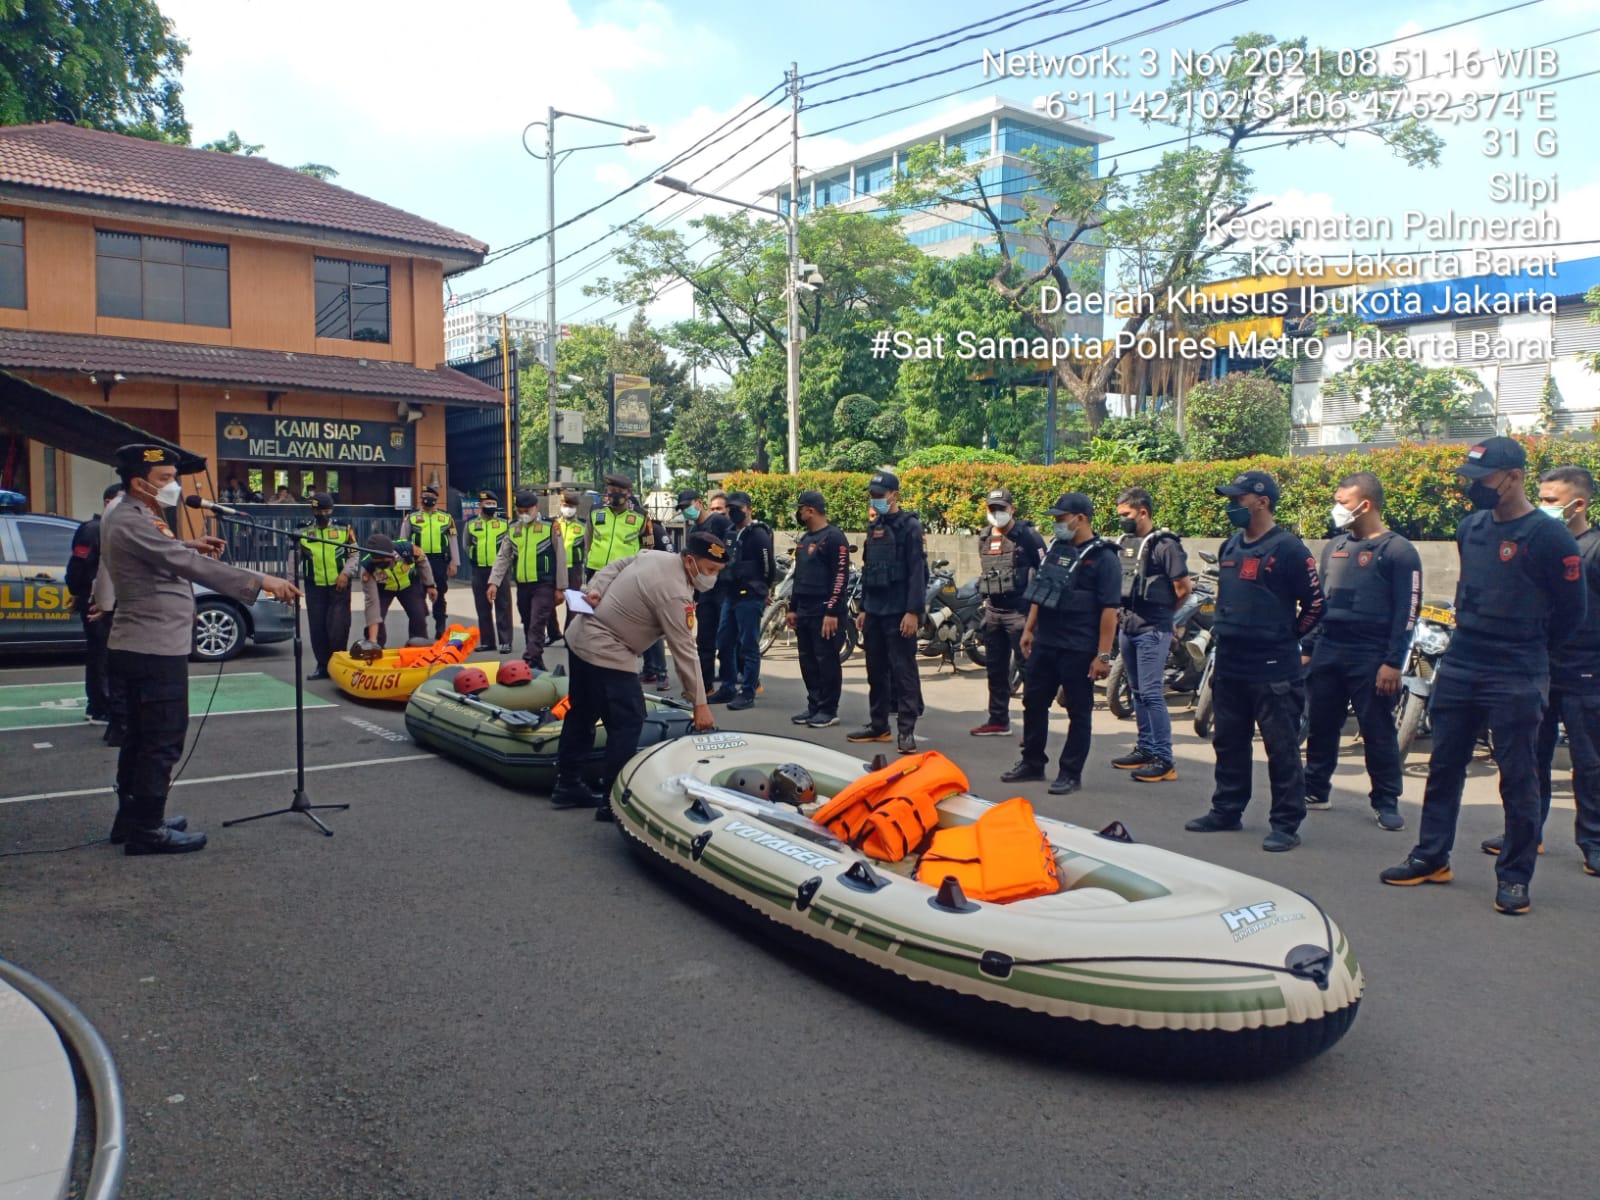 Personel Sat Samapta Polres Metro Jakarta Barat menggelar kesiapan sekaligus latihan penggunaan perahu karet. (Foto: PMJ News). 